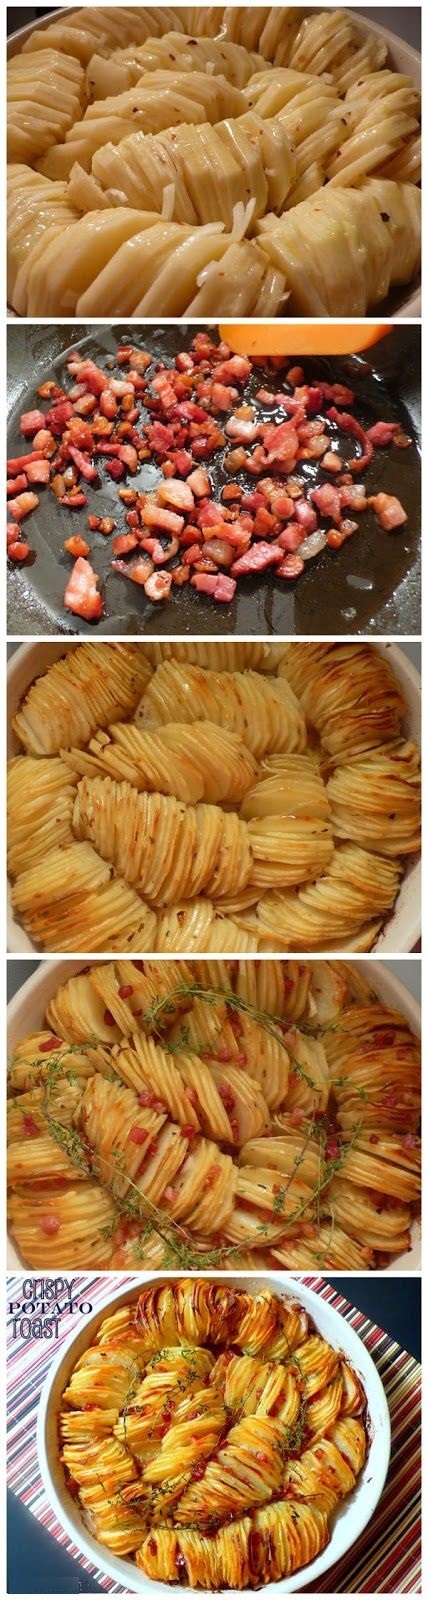 картофельные кружочки, запеченные в форме